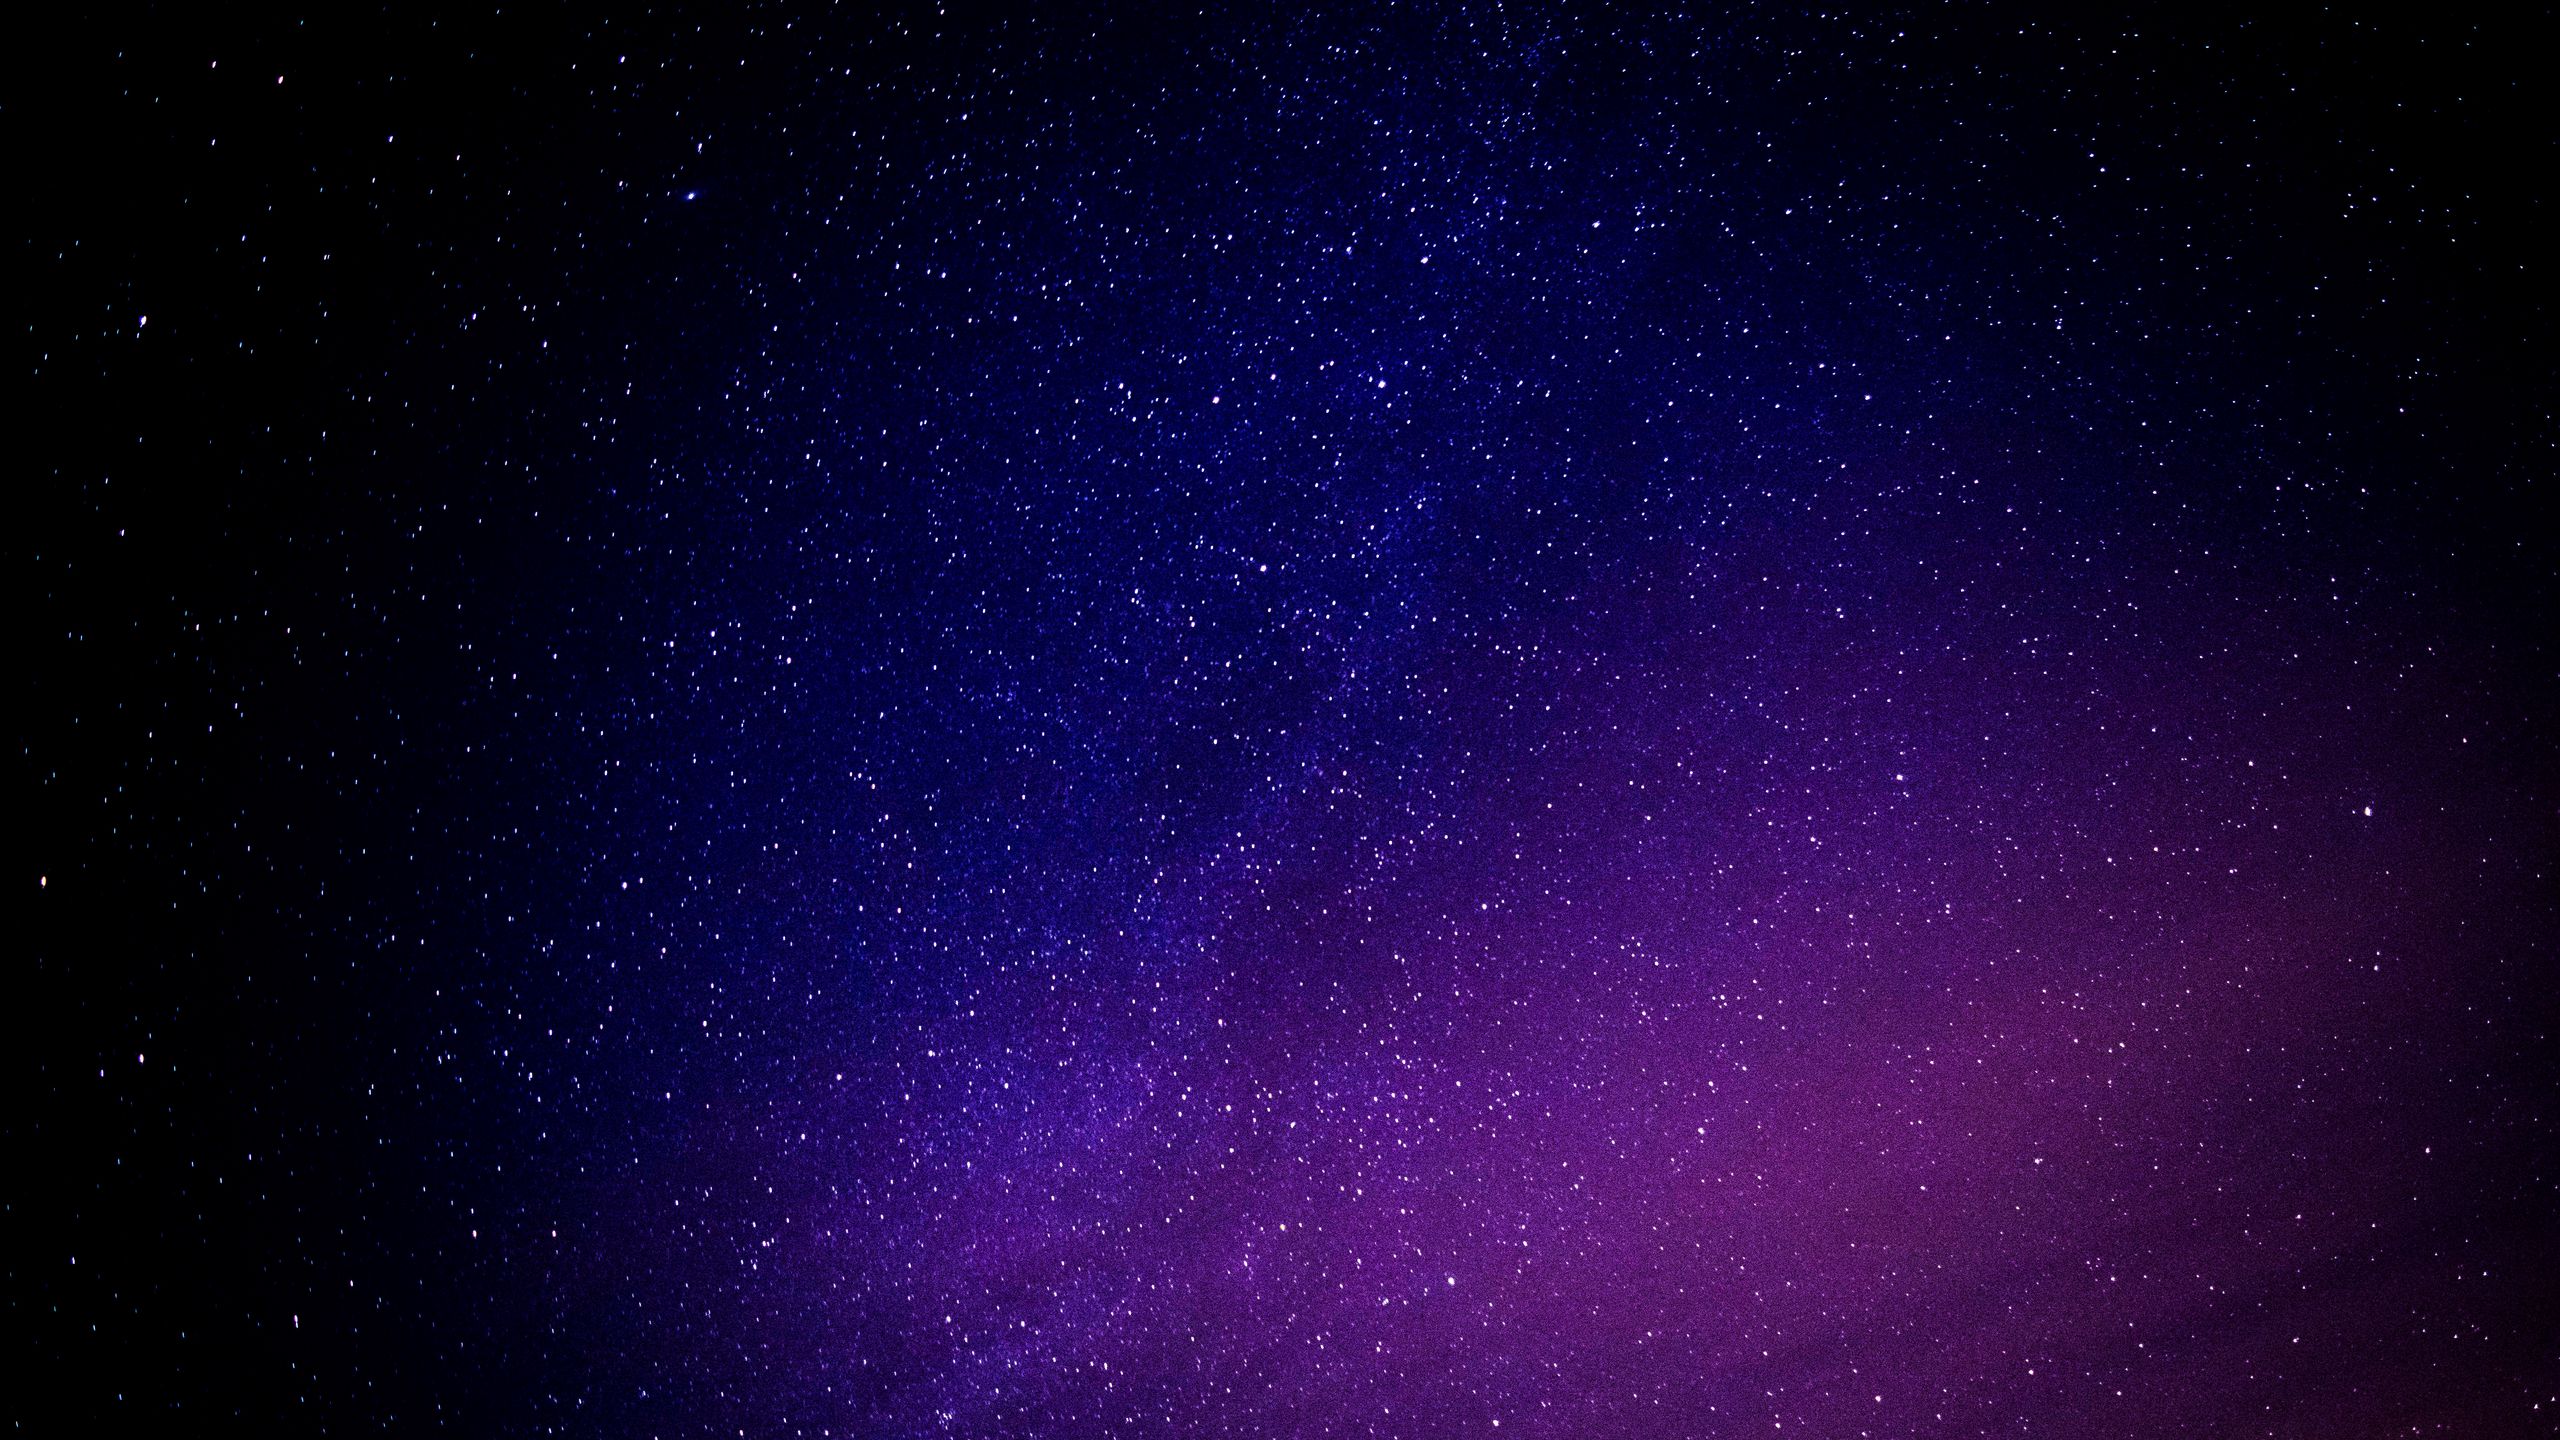 Bầu trời đầy sao (Starry sky): Bầu trời đầy sao sẽ không bao giờ làm bạn thất vọng về sự đẹp đẽ và kì diệu của nó. Ngắm nhìn vô vàn những vì sao lấp lánh trong đêm trên thiết bị của bạn. Truy cập ngay để tải xuống những hình ảnh đẹp và trải nghiệm bầu trời đầy sao!